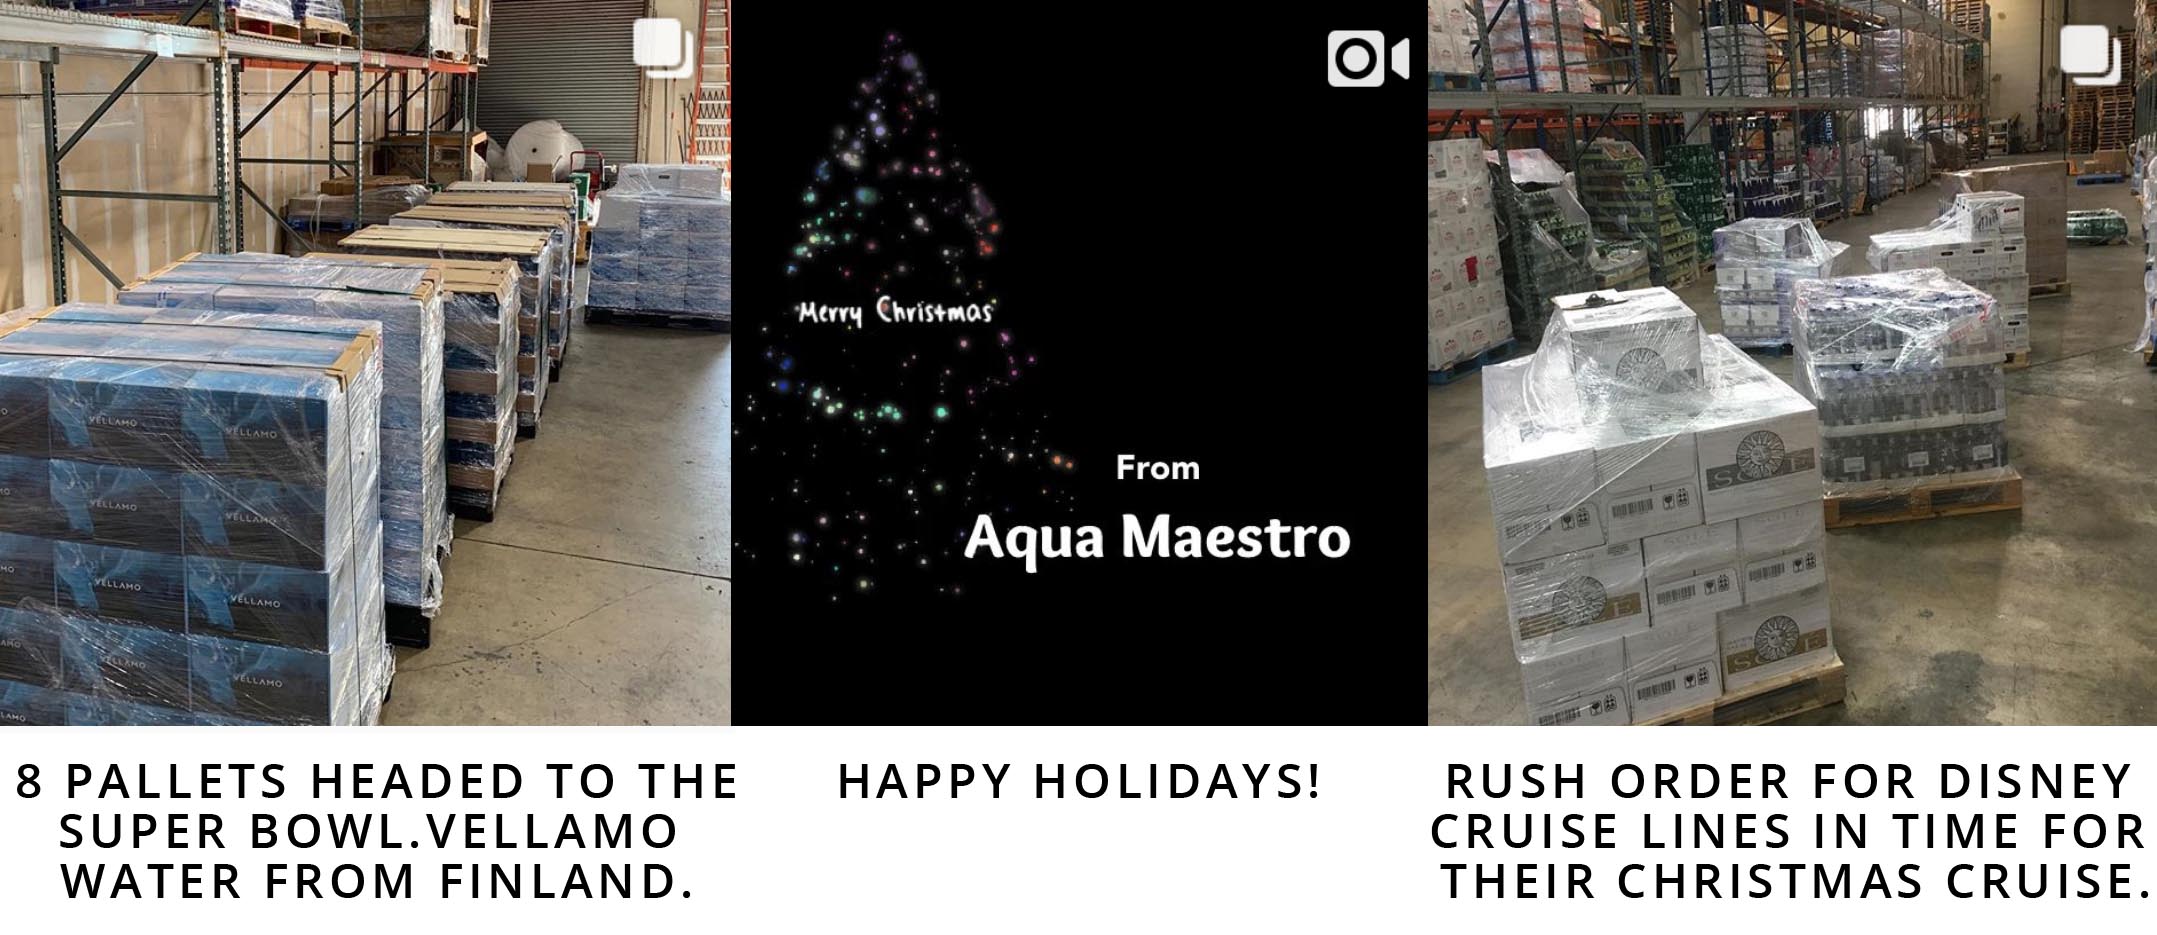 Follow AquaMaestro on Instagram: @aqua_maestro